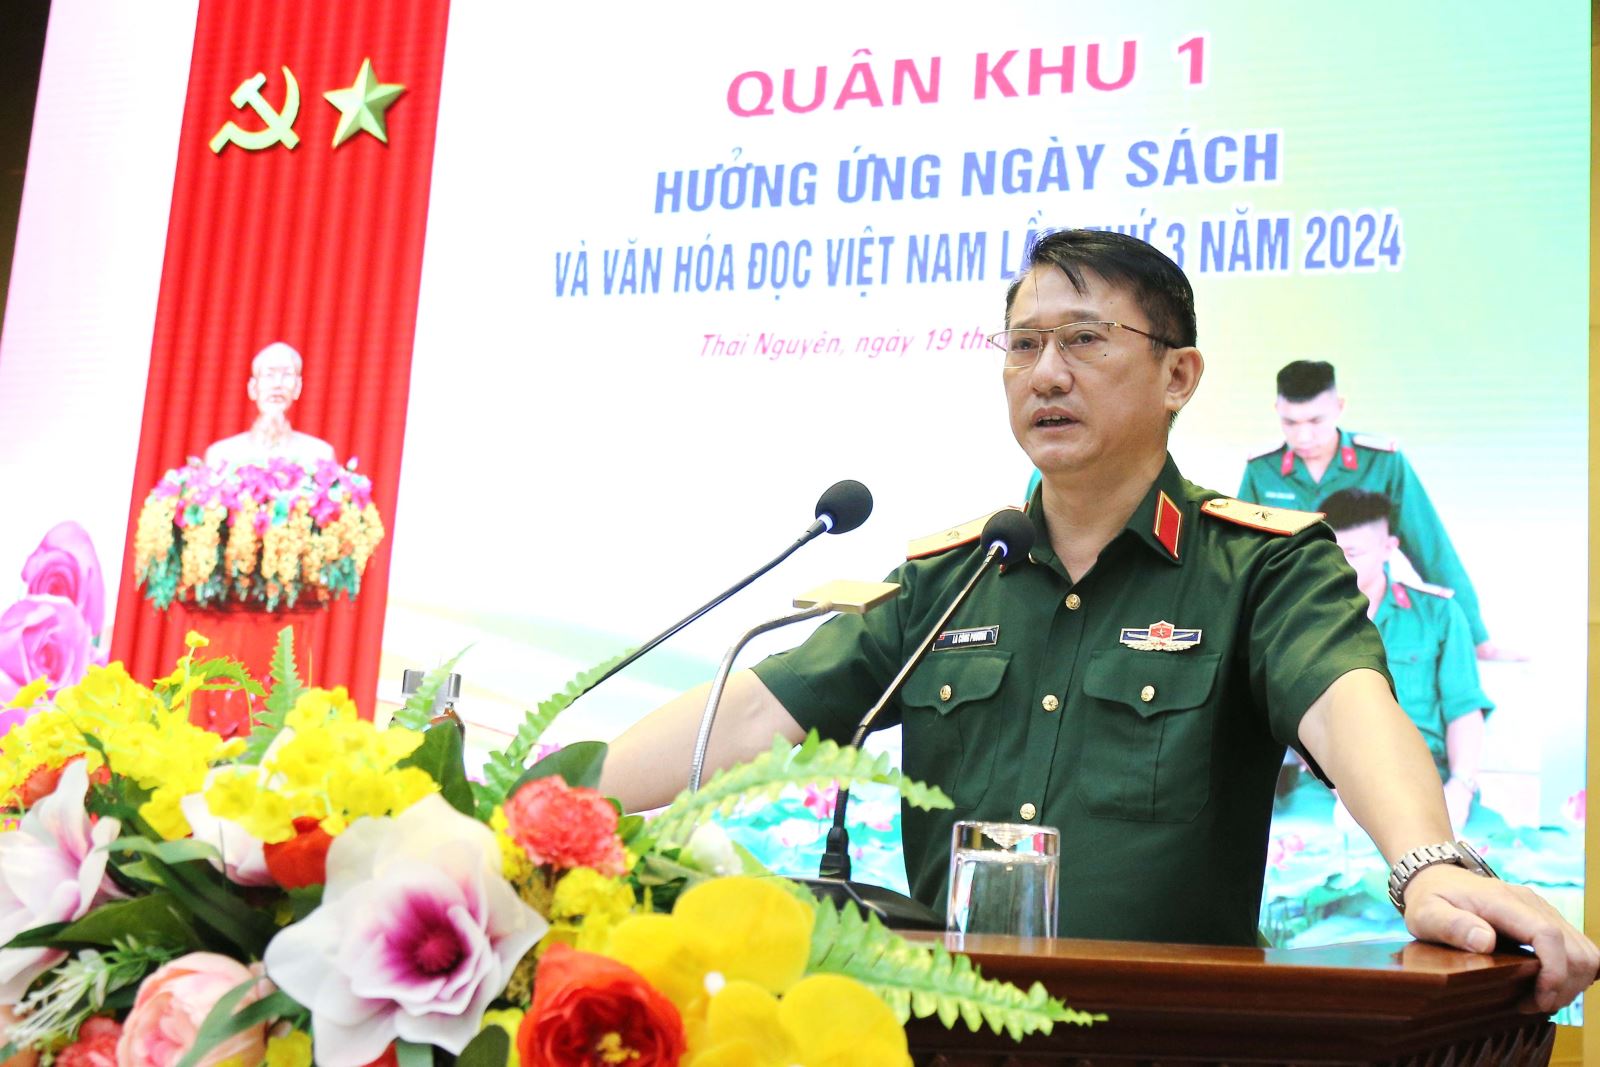 Quân khu hưởng ứng Ngày Sách và Văn hóa đọc Việt Nam lần thứ 3 năm 2024